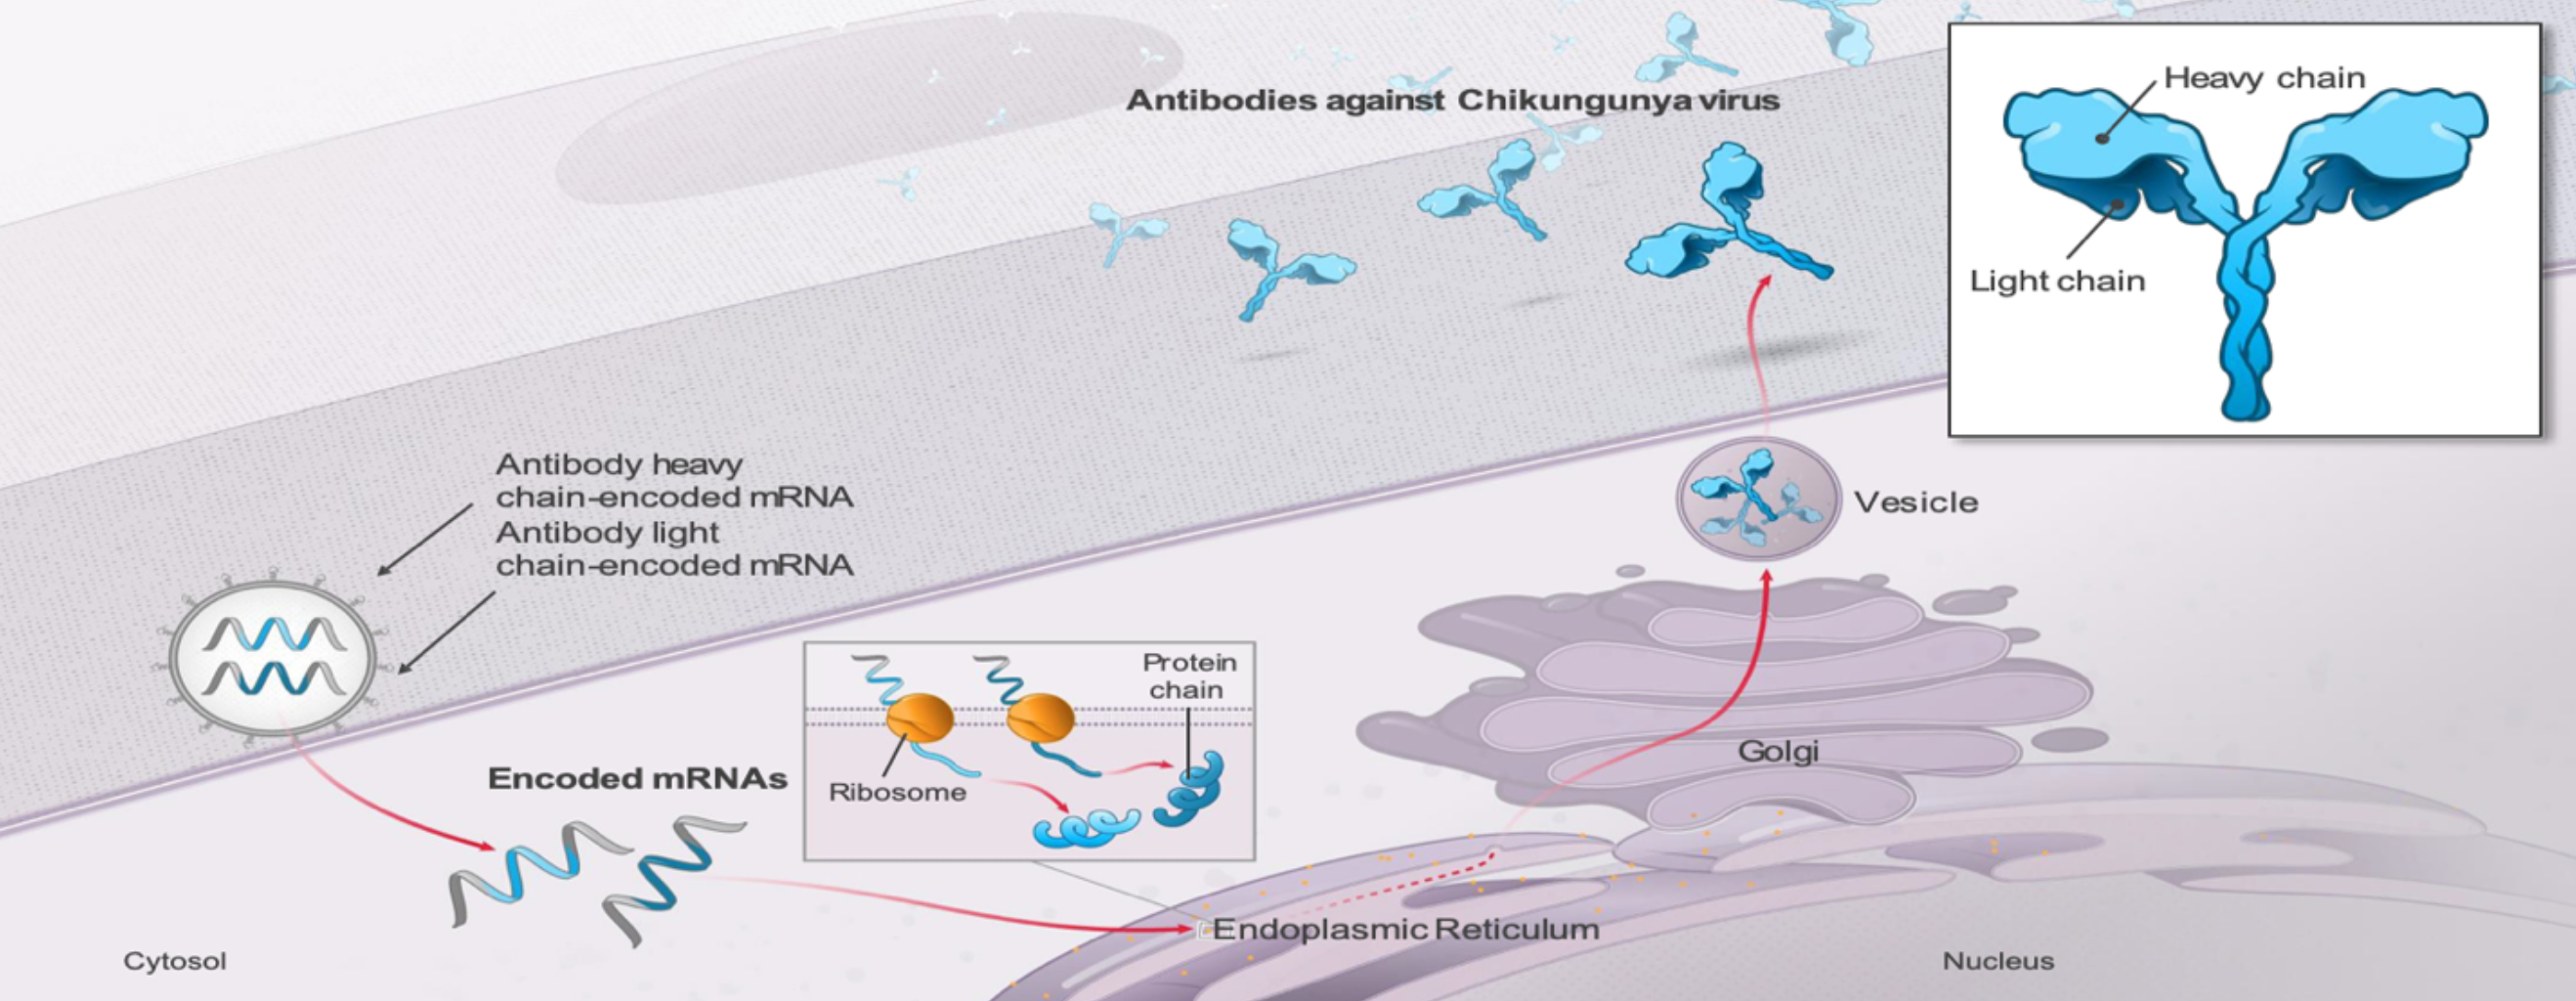 Antibodies against Chikungunya virus